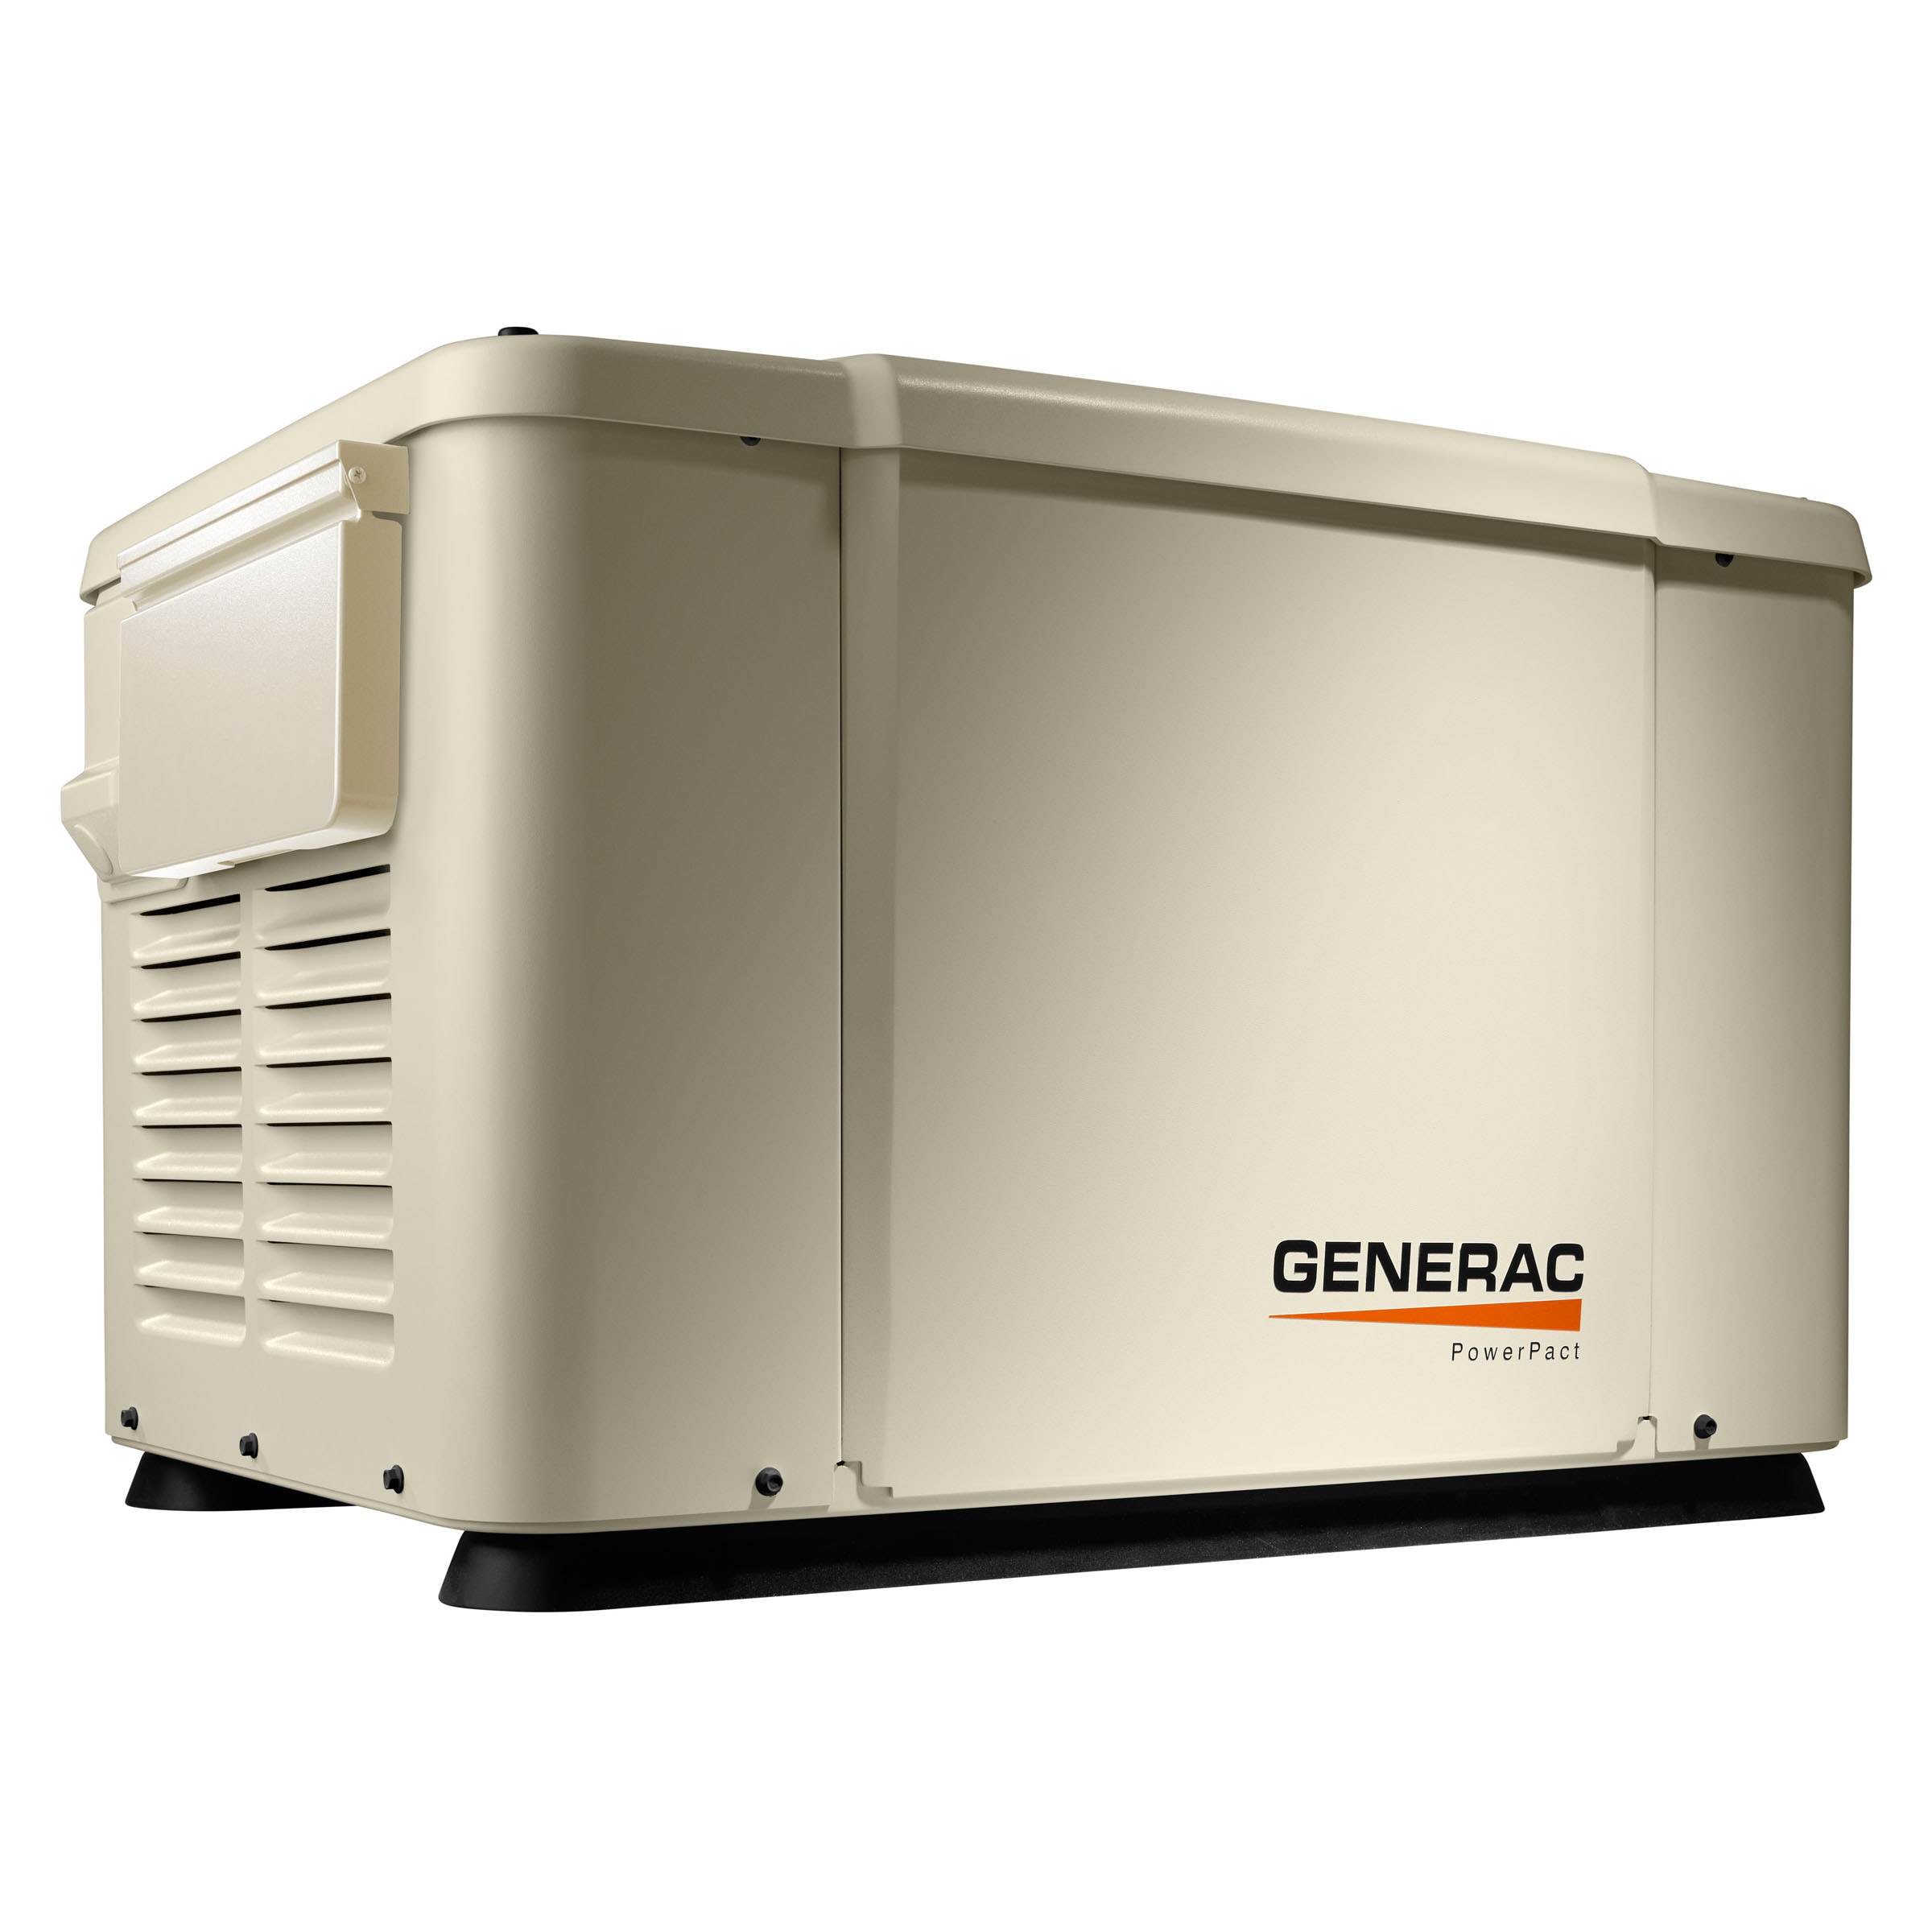 Generac Powerpact 7500 Watt Dual Fuel